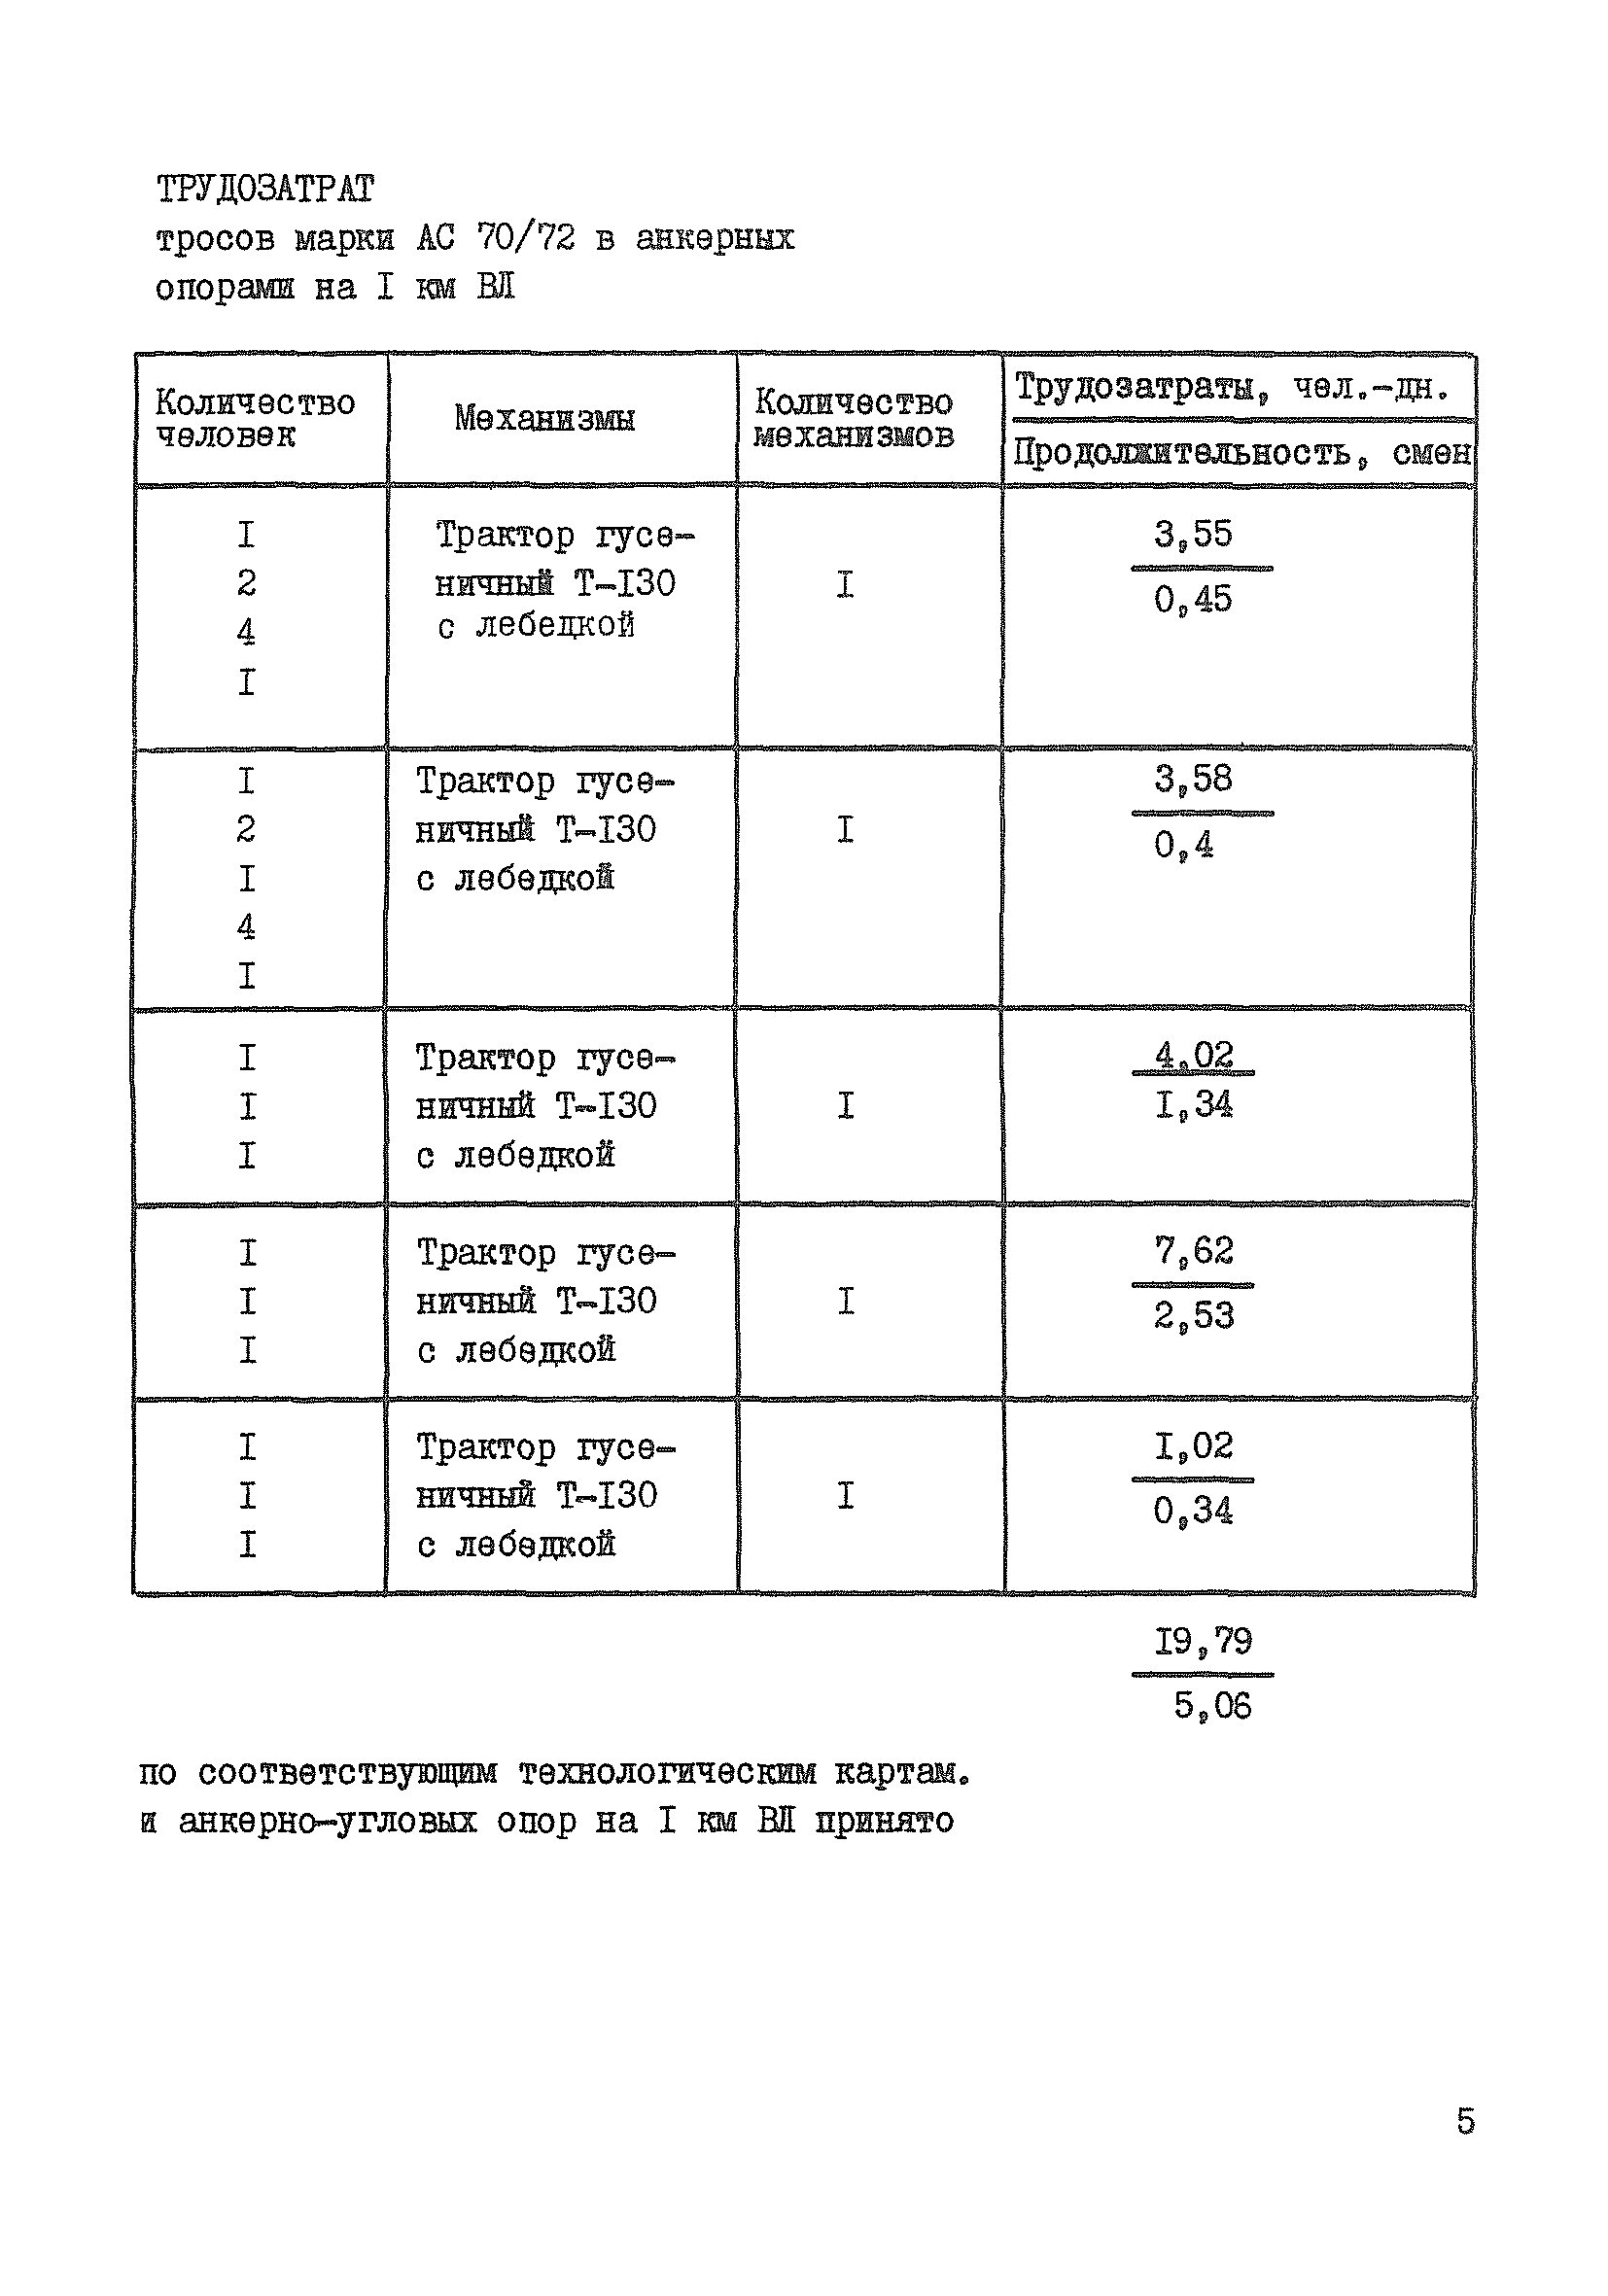 Технологическая карта К-5-22-2